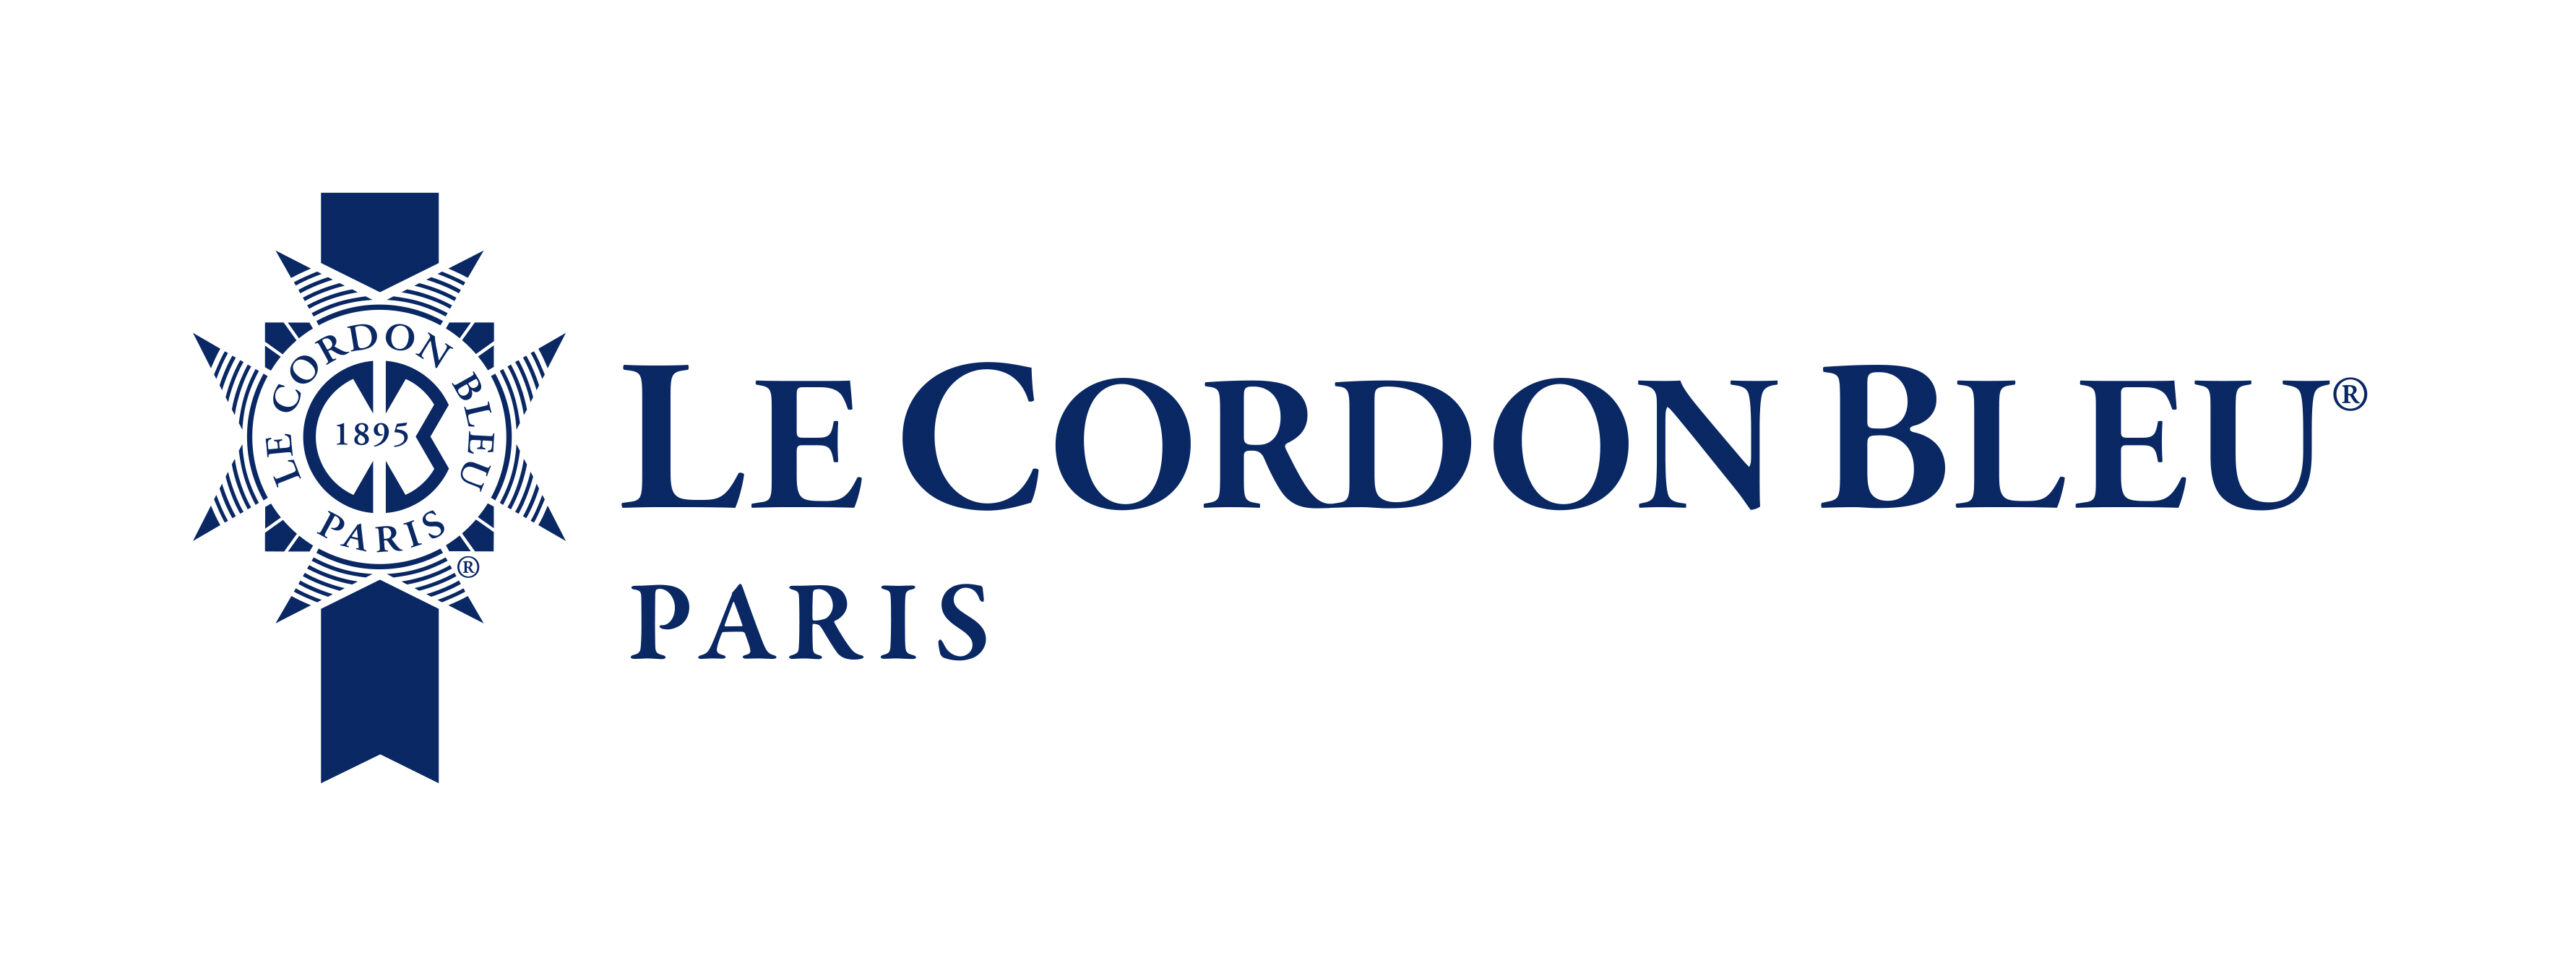 Logo_Le_Cordon_Bleu_Paris_client Mercuria